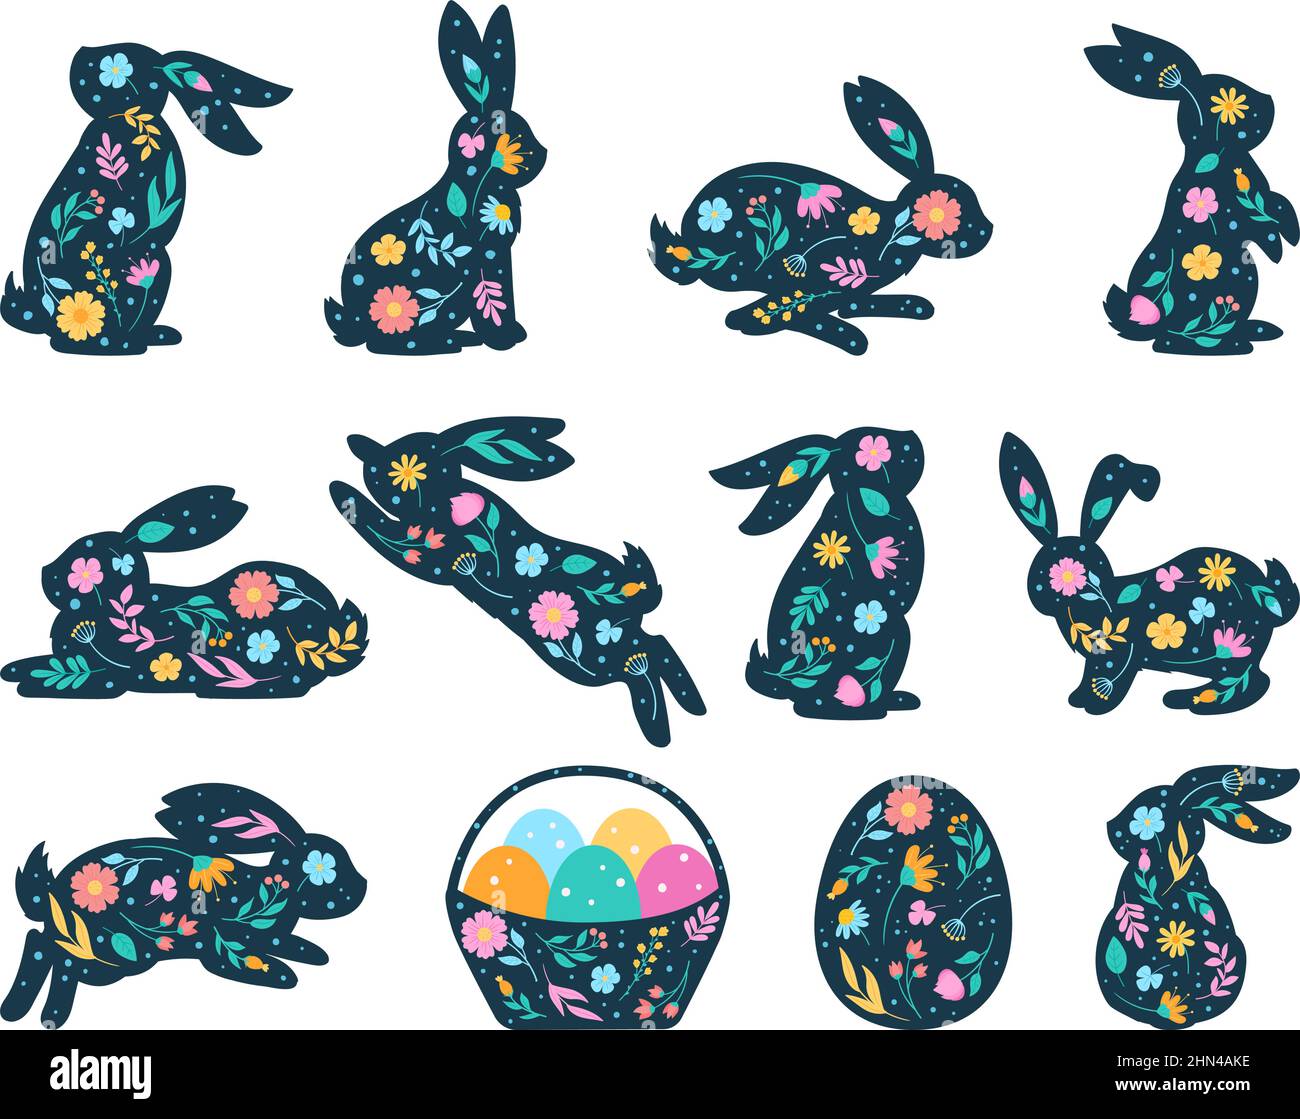 Dessin animé lapin de pâques silhouette, mignon lapin de printemps et éléments d'oeufs. Lot d'illustrations vectorielles de lapins de pâques fleuris silhouettes. Petits lapins mignons Illustration de Vecteur